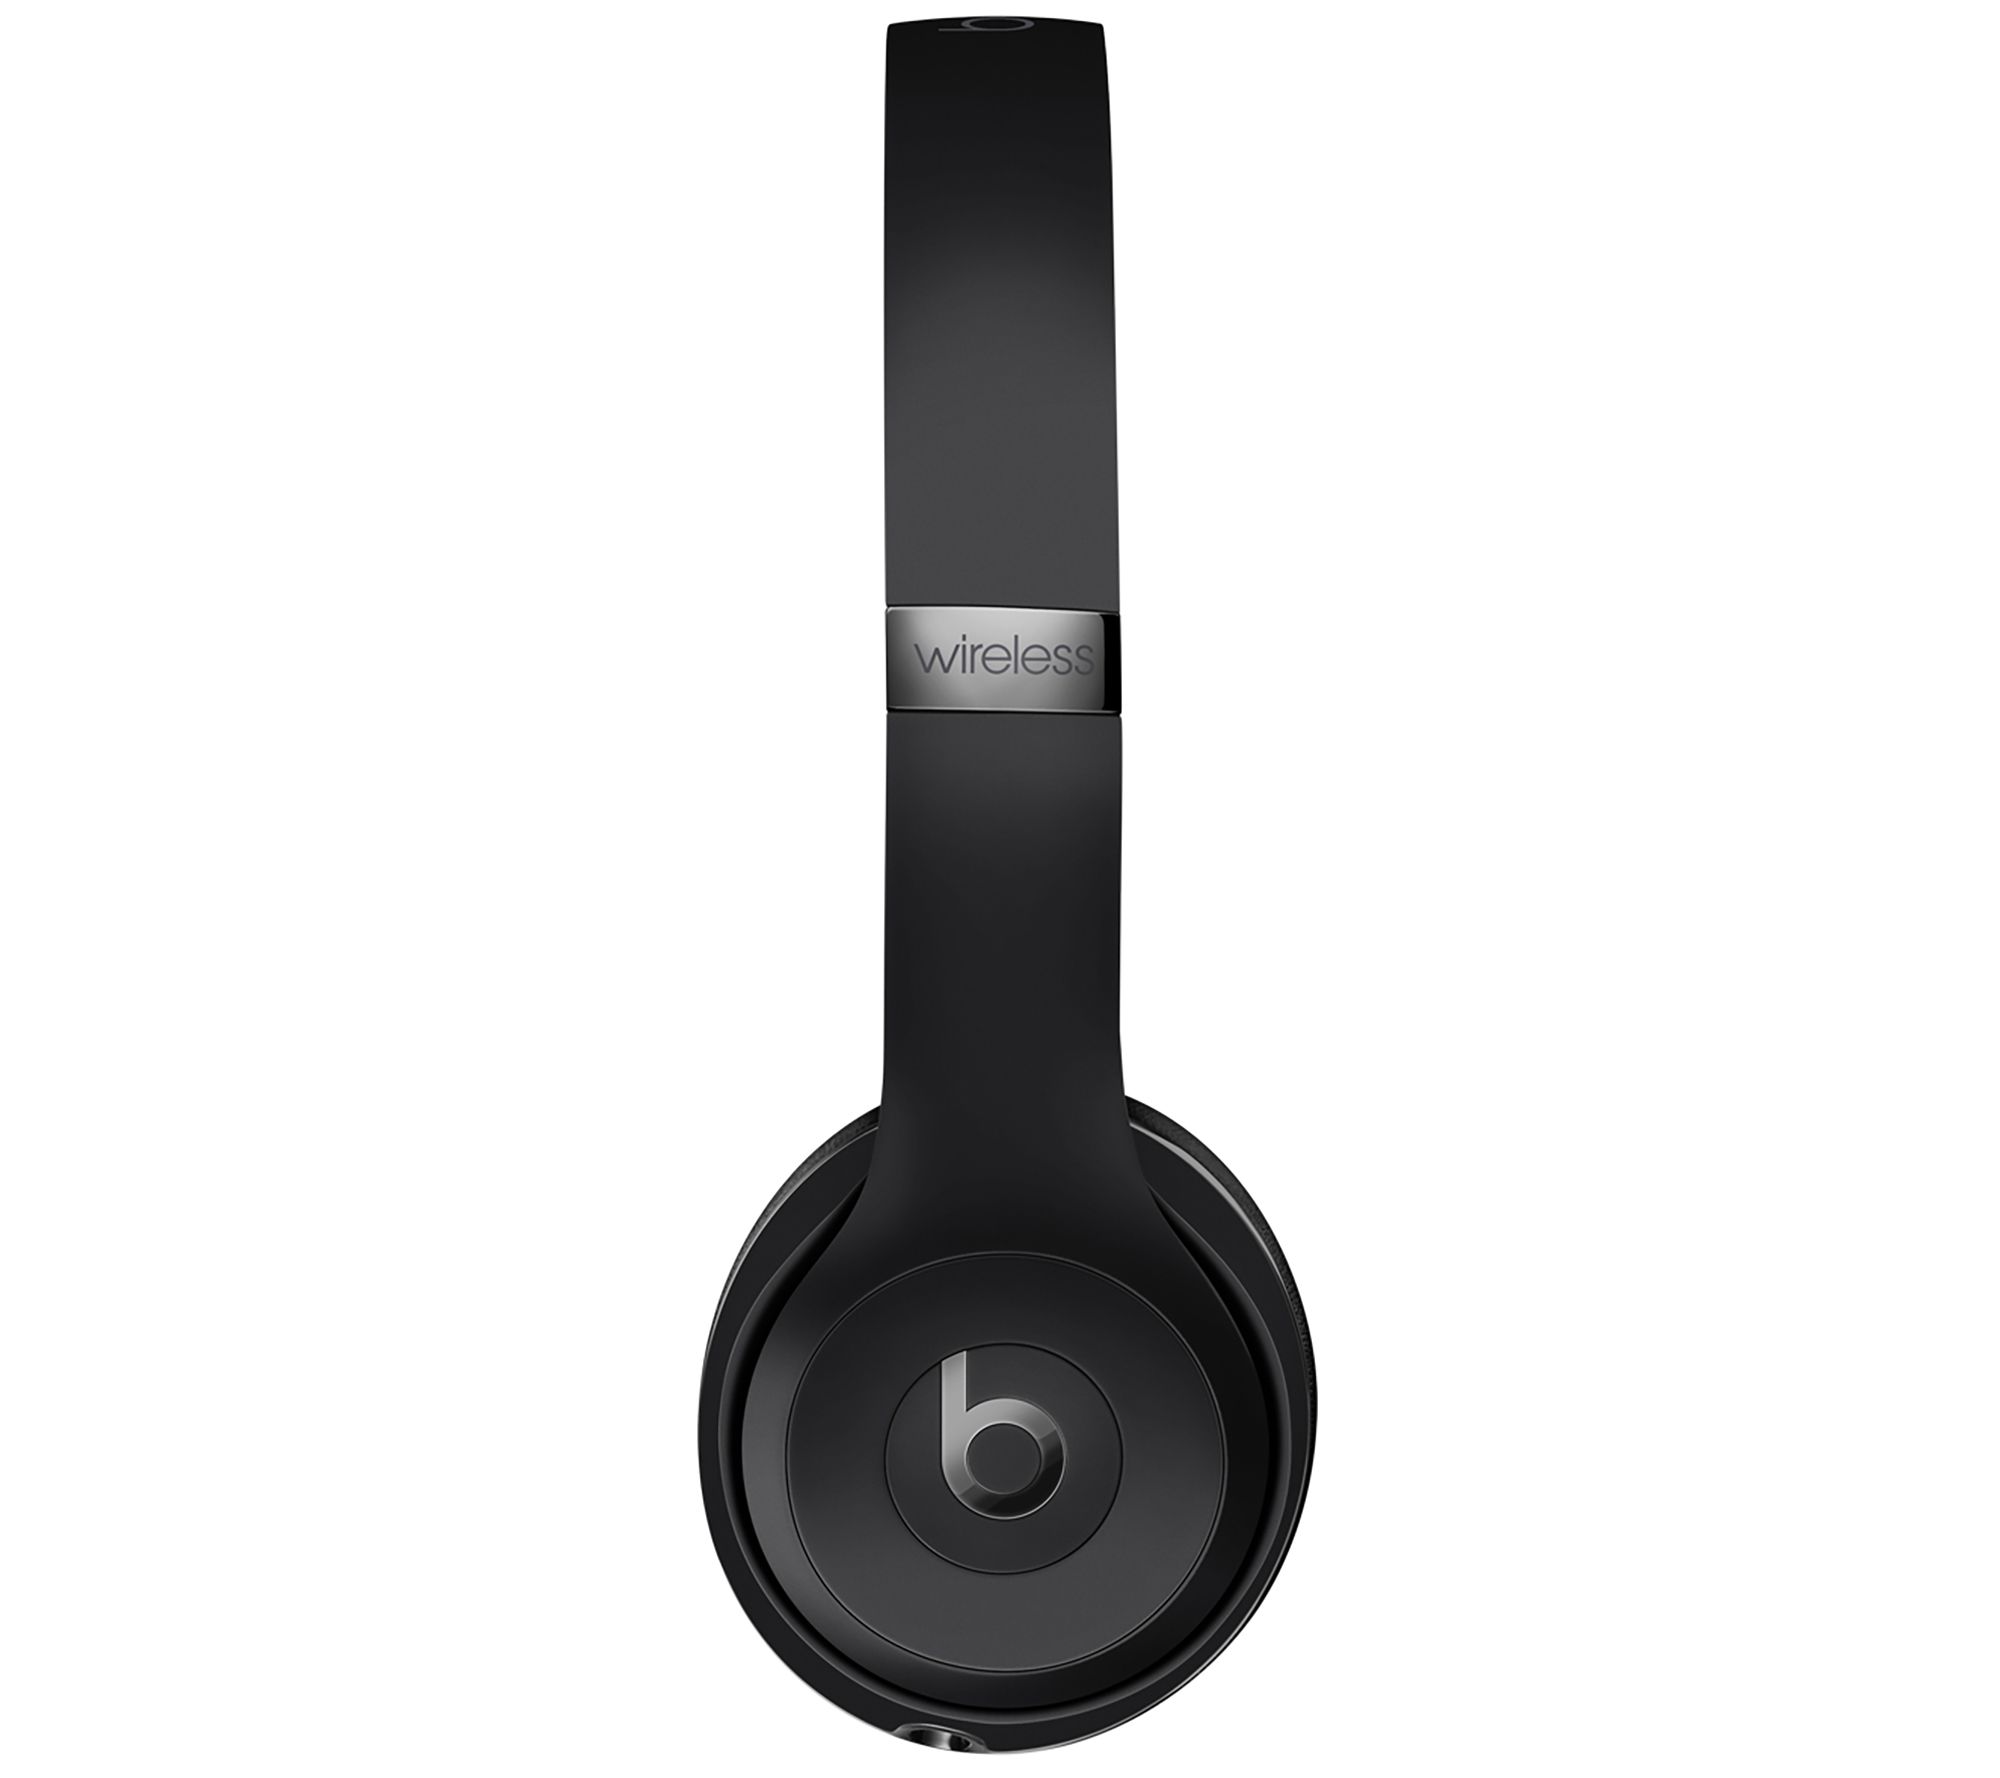 Beats Solo3 Wireless On-Ear Headphones 